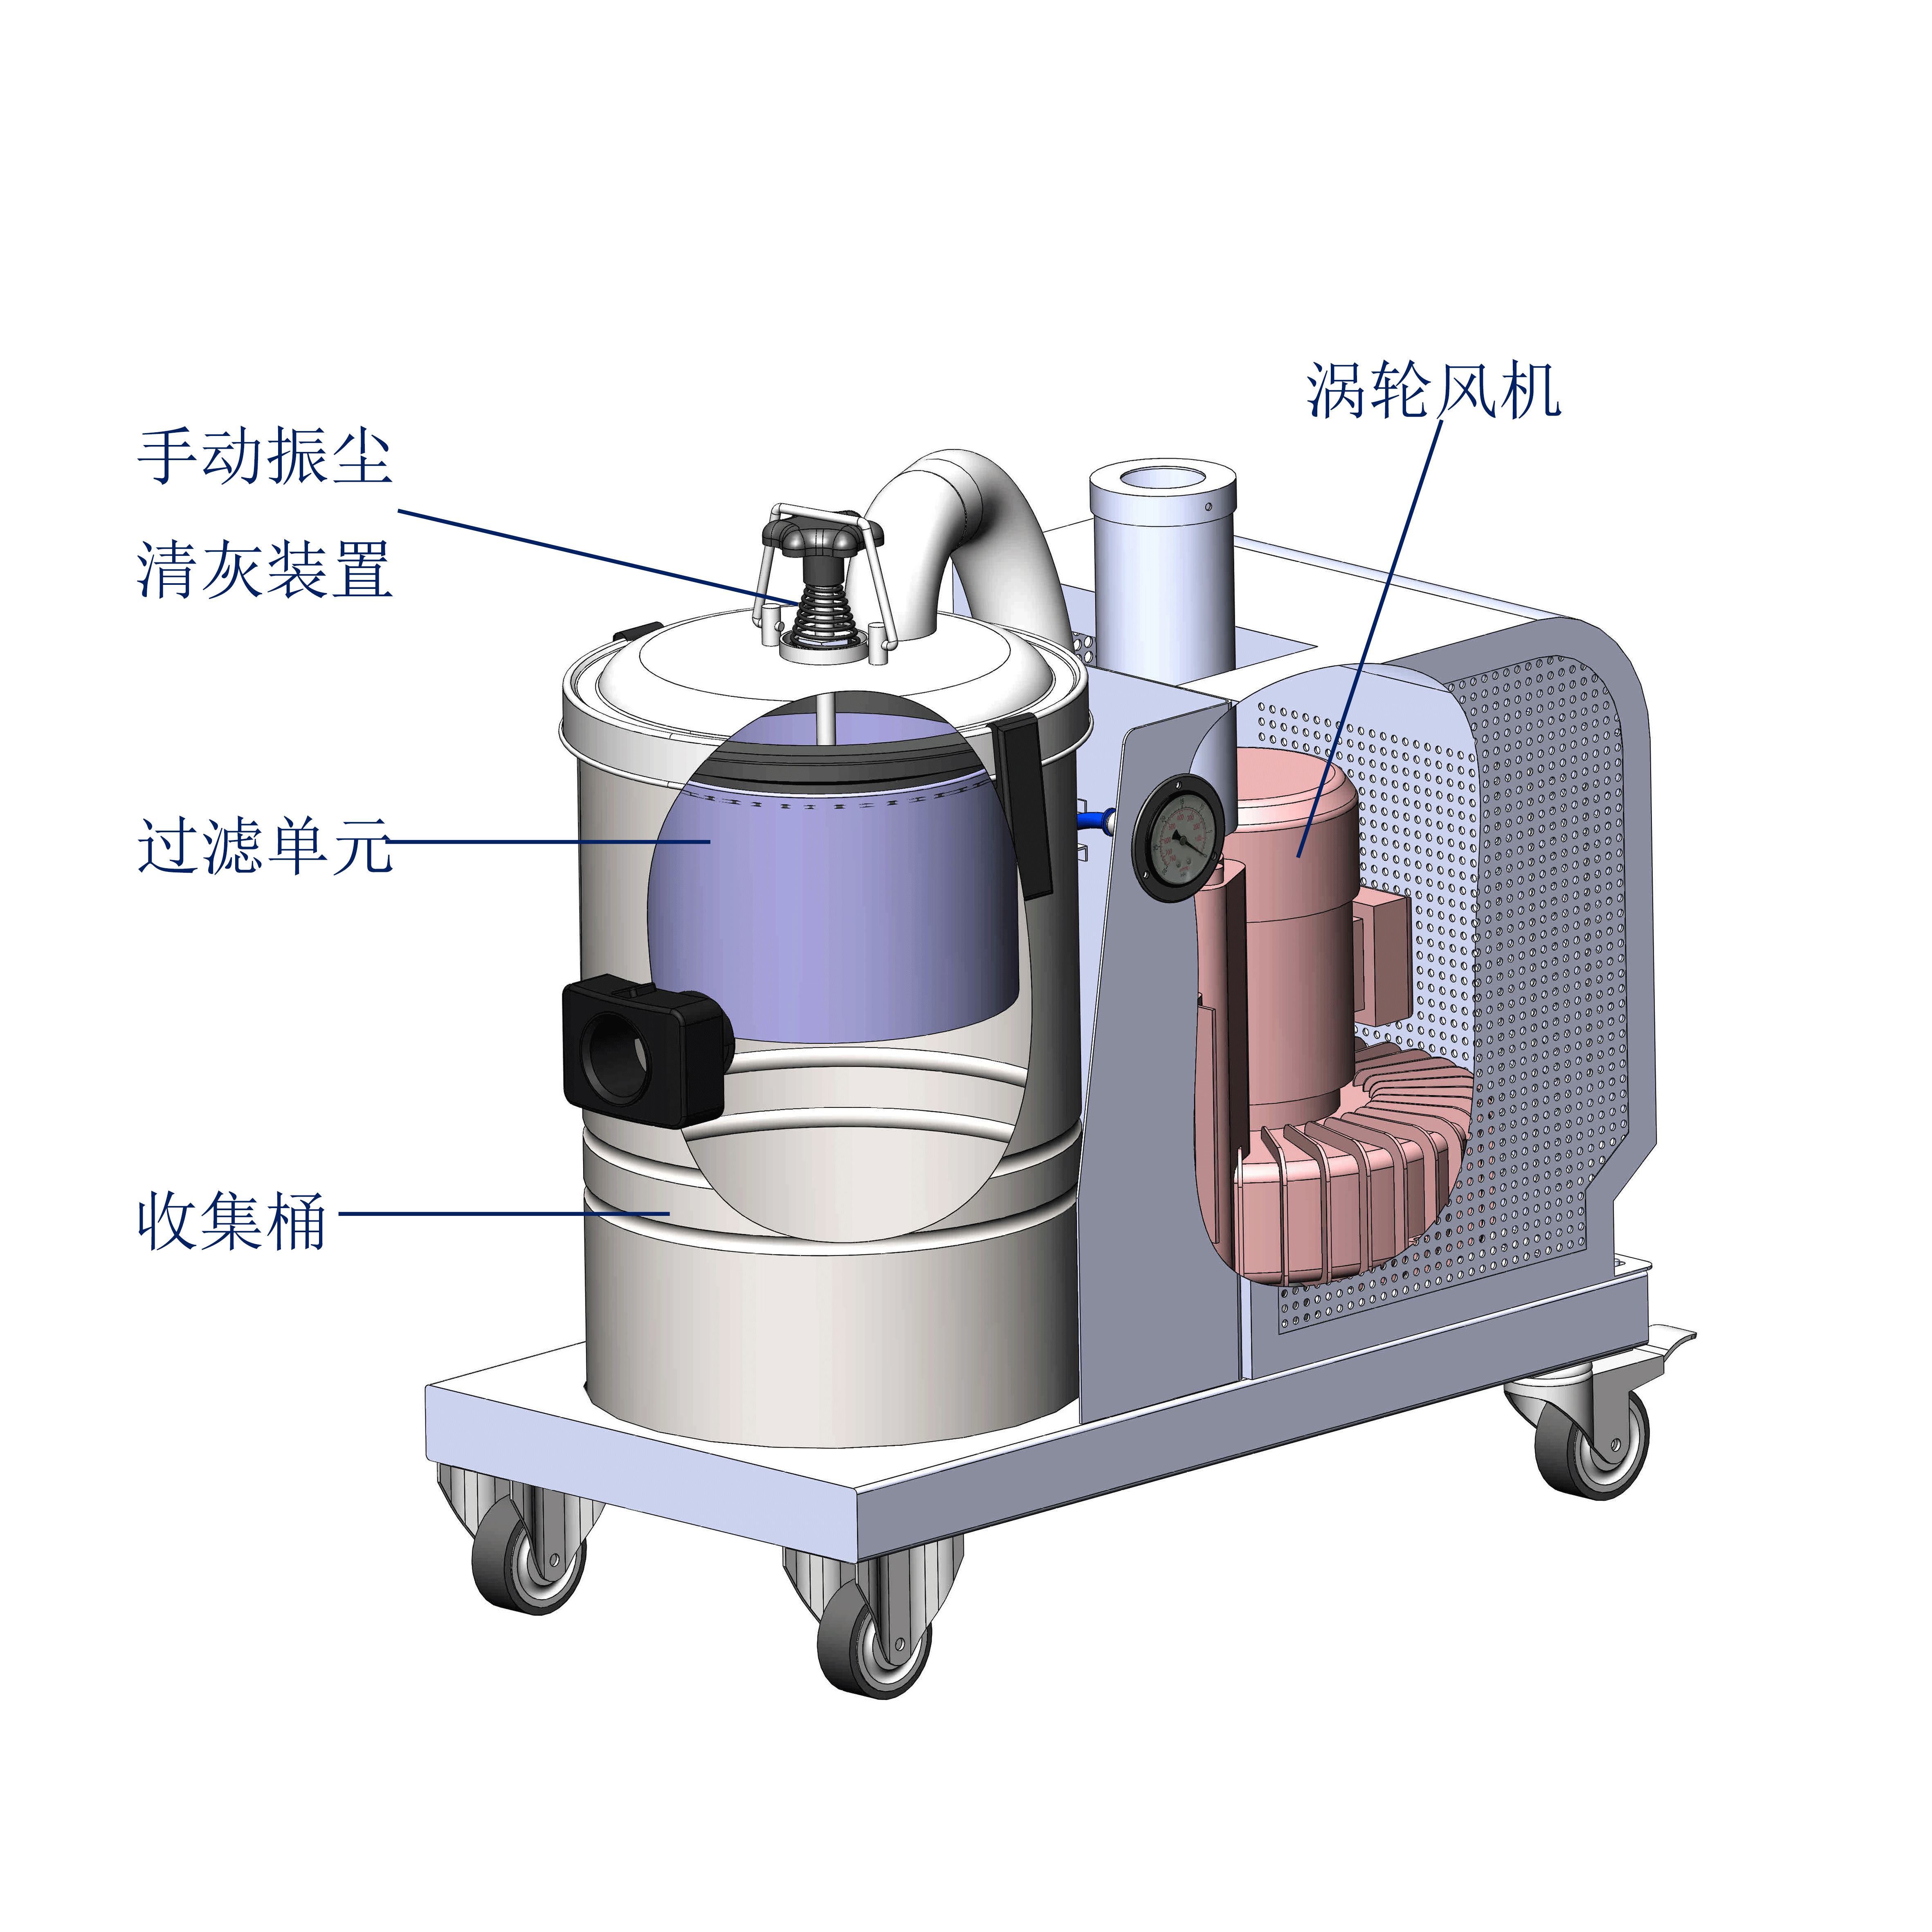 厂家直销 粉尘吸尘器 桶式吸尘器 食品医药配套型工业吸尘器